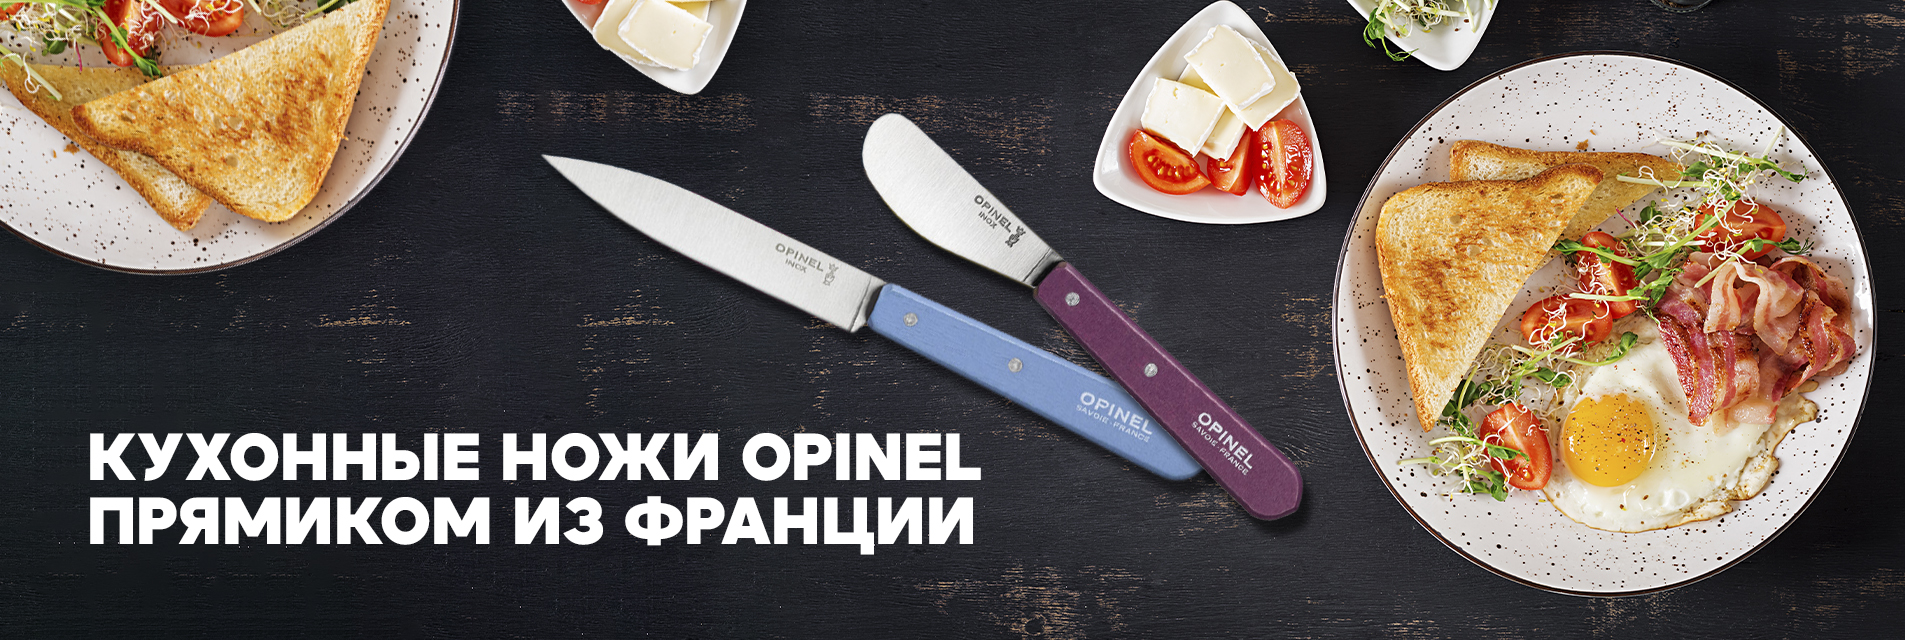 Кухонные ножи Opinel